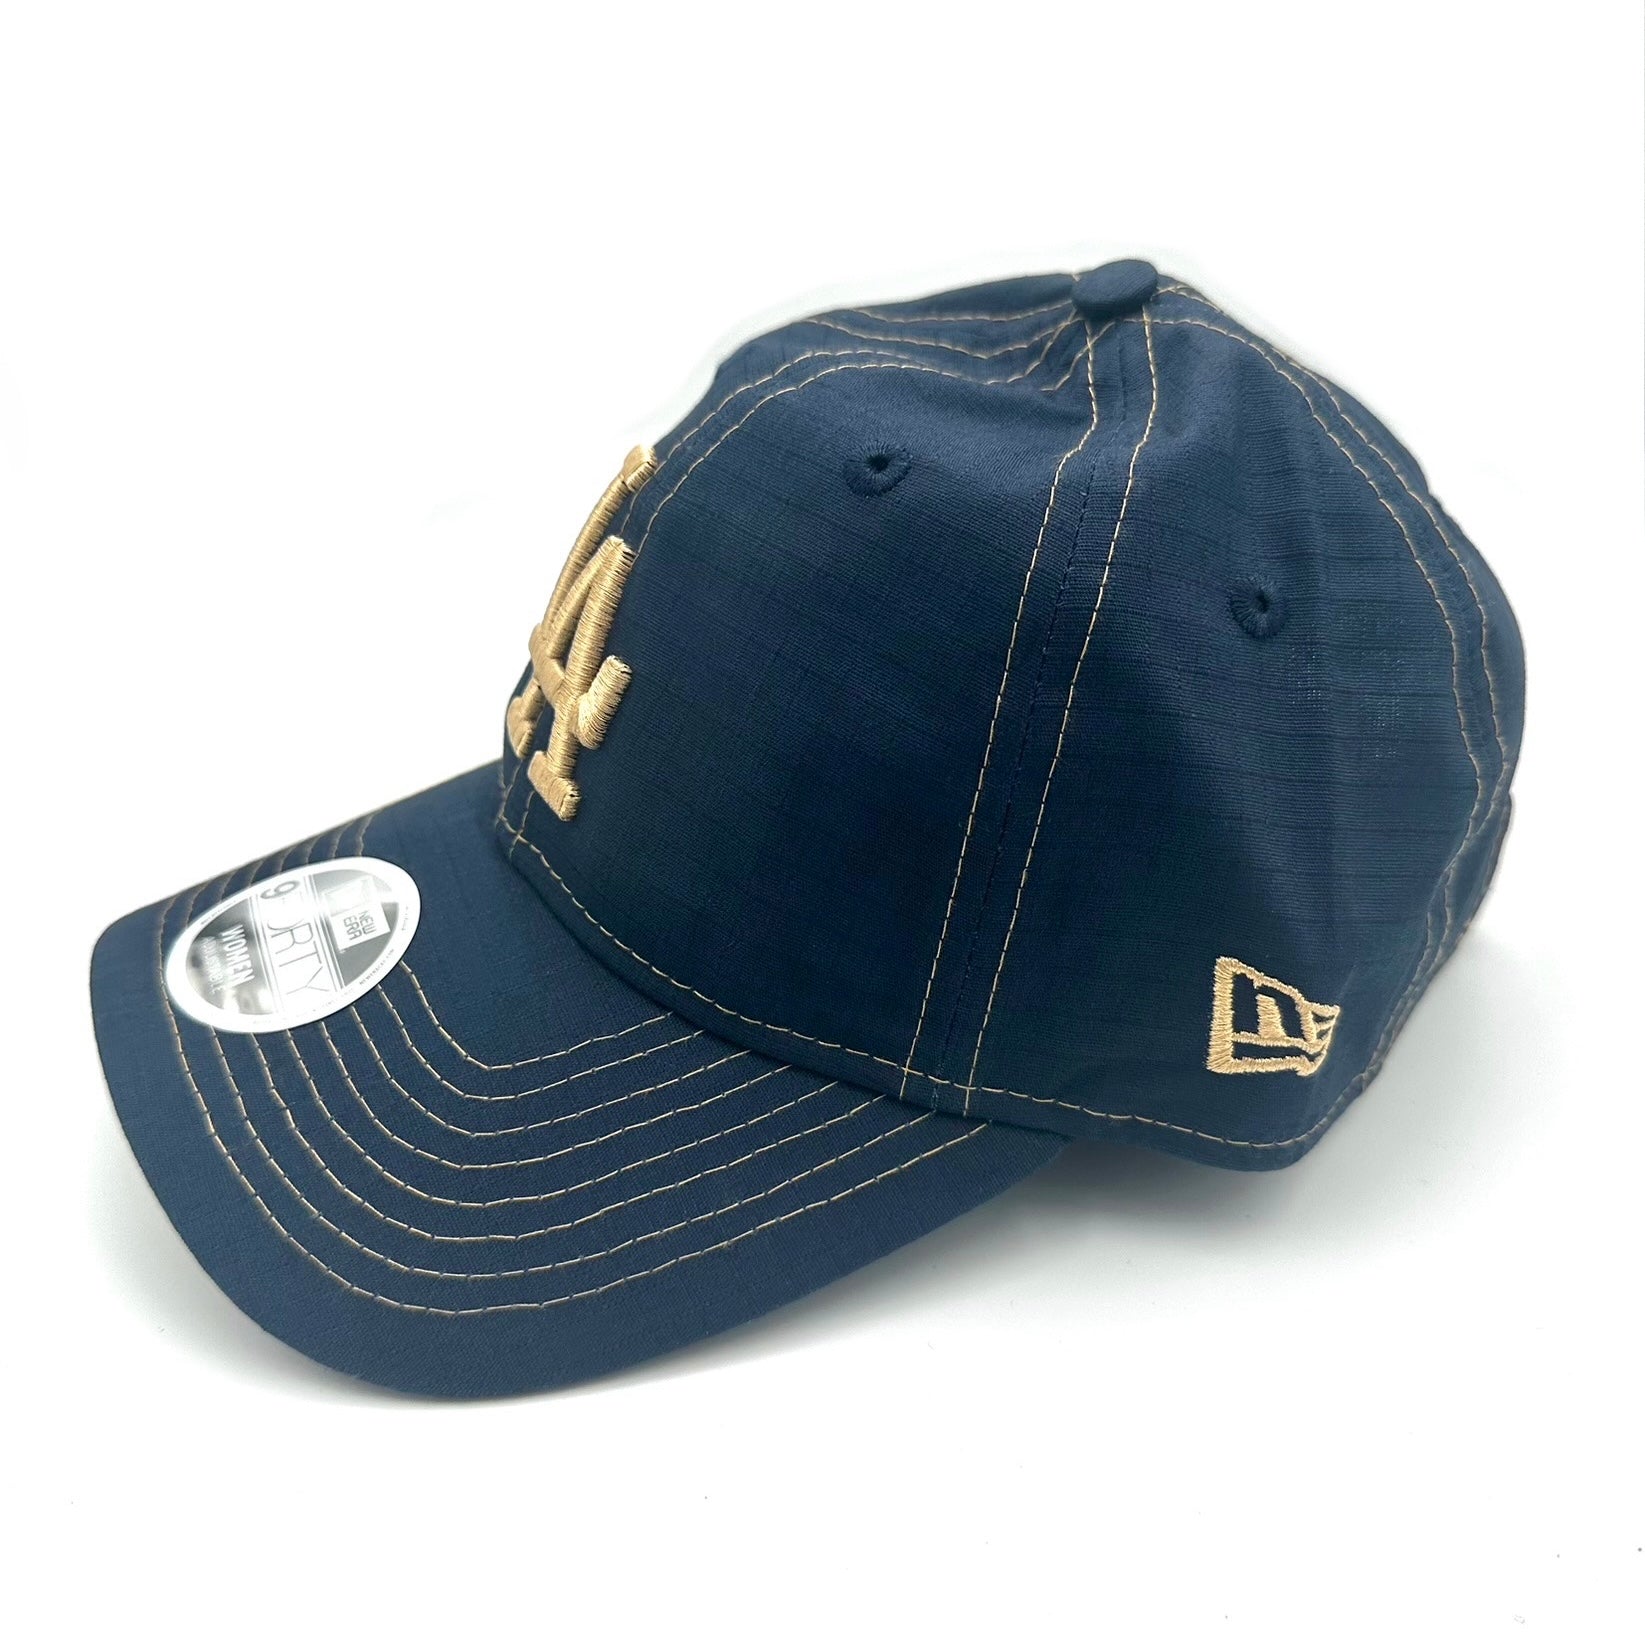 LA Dodgers Women's Cap - Navy Ripstop Outdoor Strapback Hat - New Era